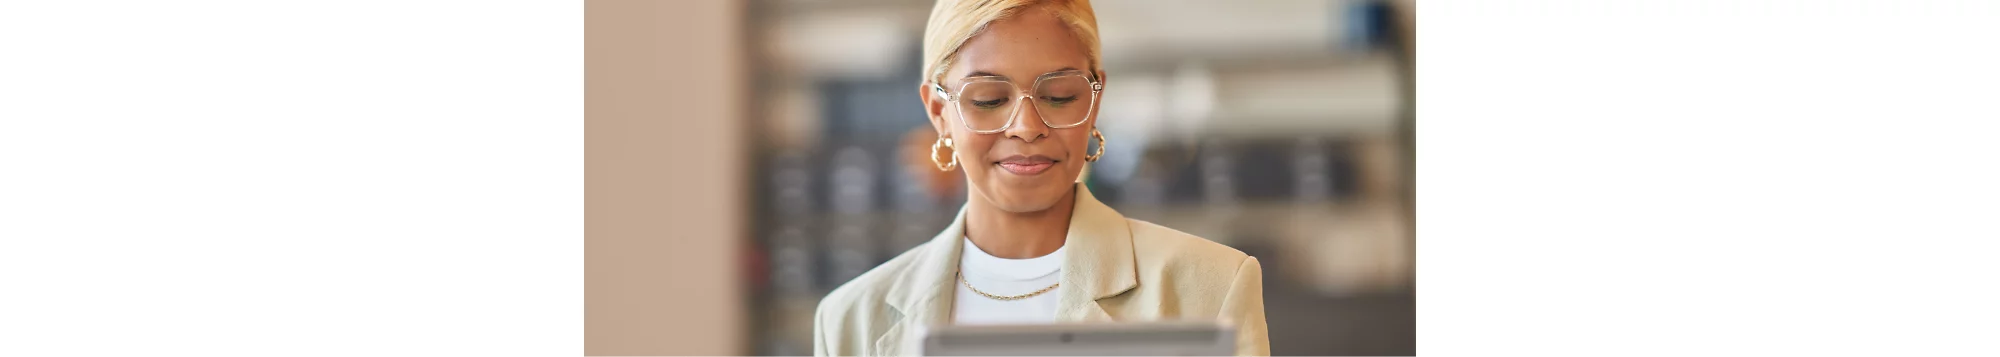 Una mujer con gafas sonríe y mirando una tableta